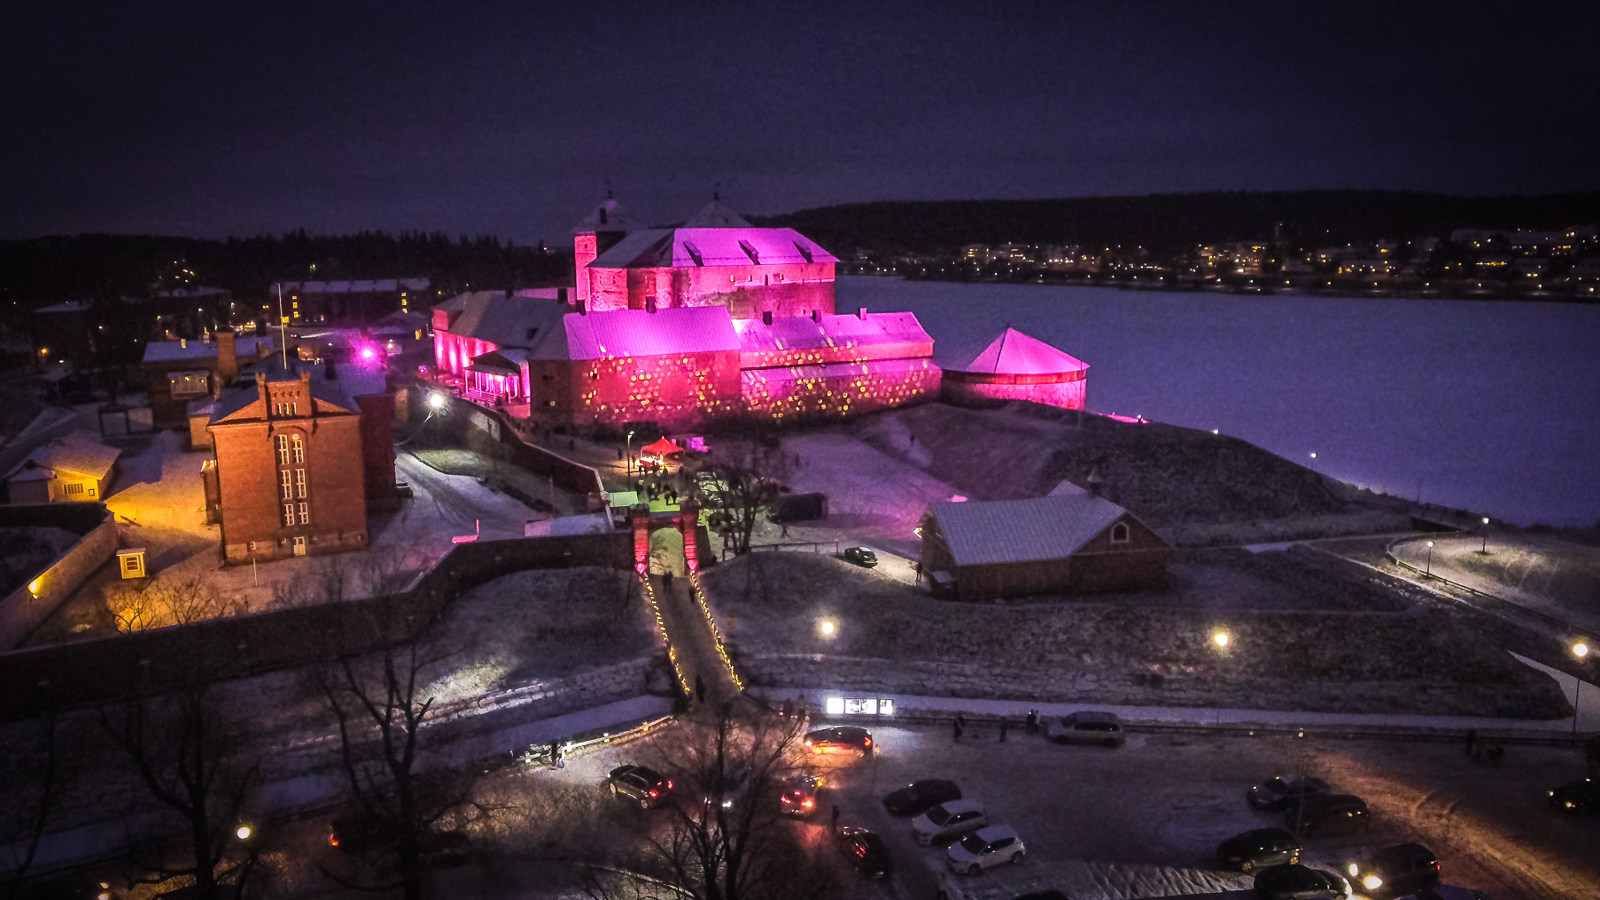 Kuvassa on Hämeen linna valaistuna punertavaksi ympäristössään.  Kuva on otettu illalla ja pimeällä.